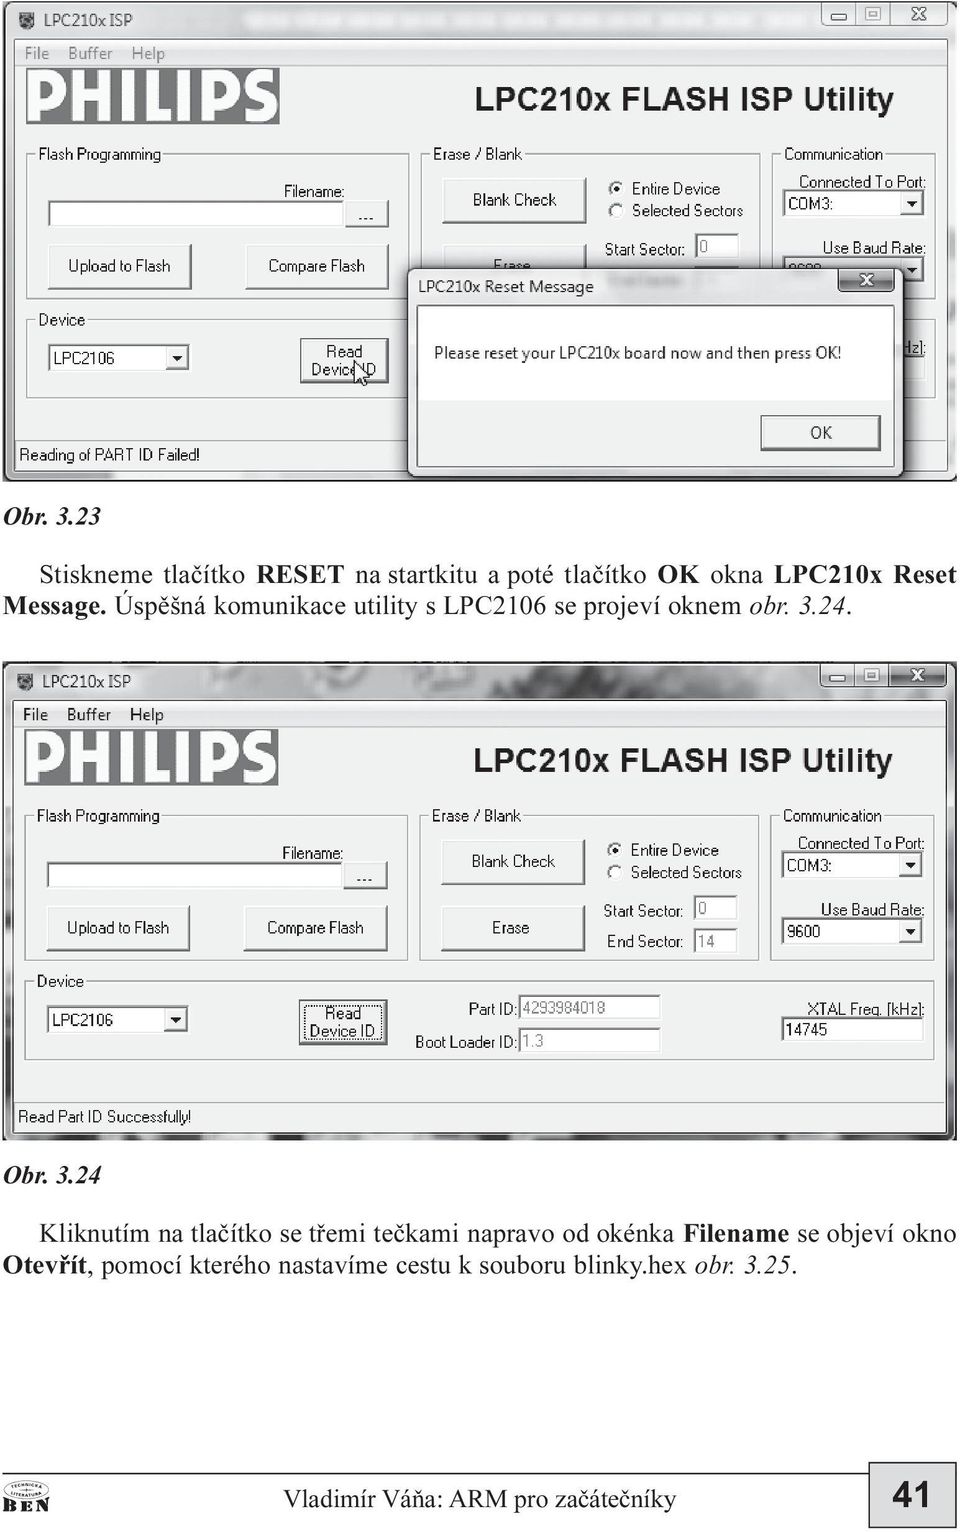 Úspìšná komunikace utility s LPC2106 se projeví oknem obr. 3.24.